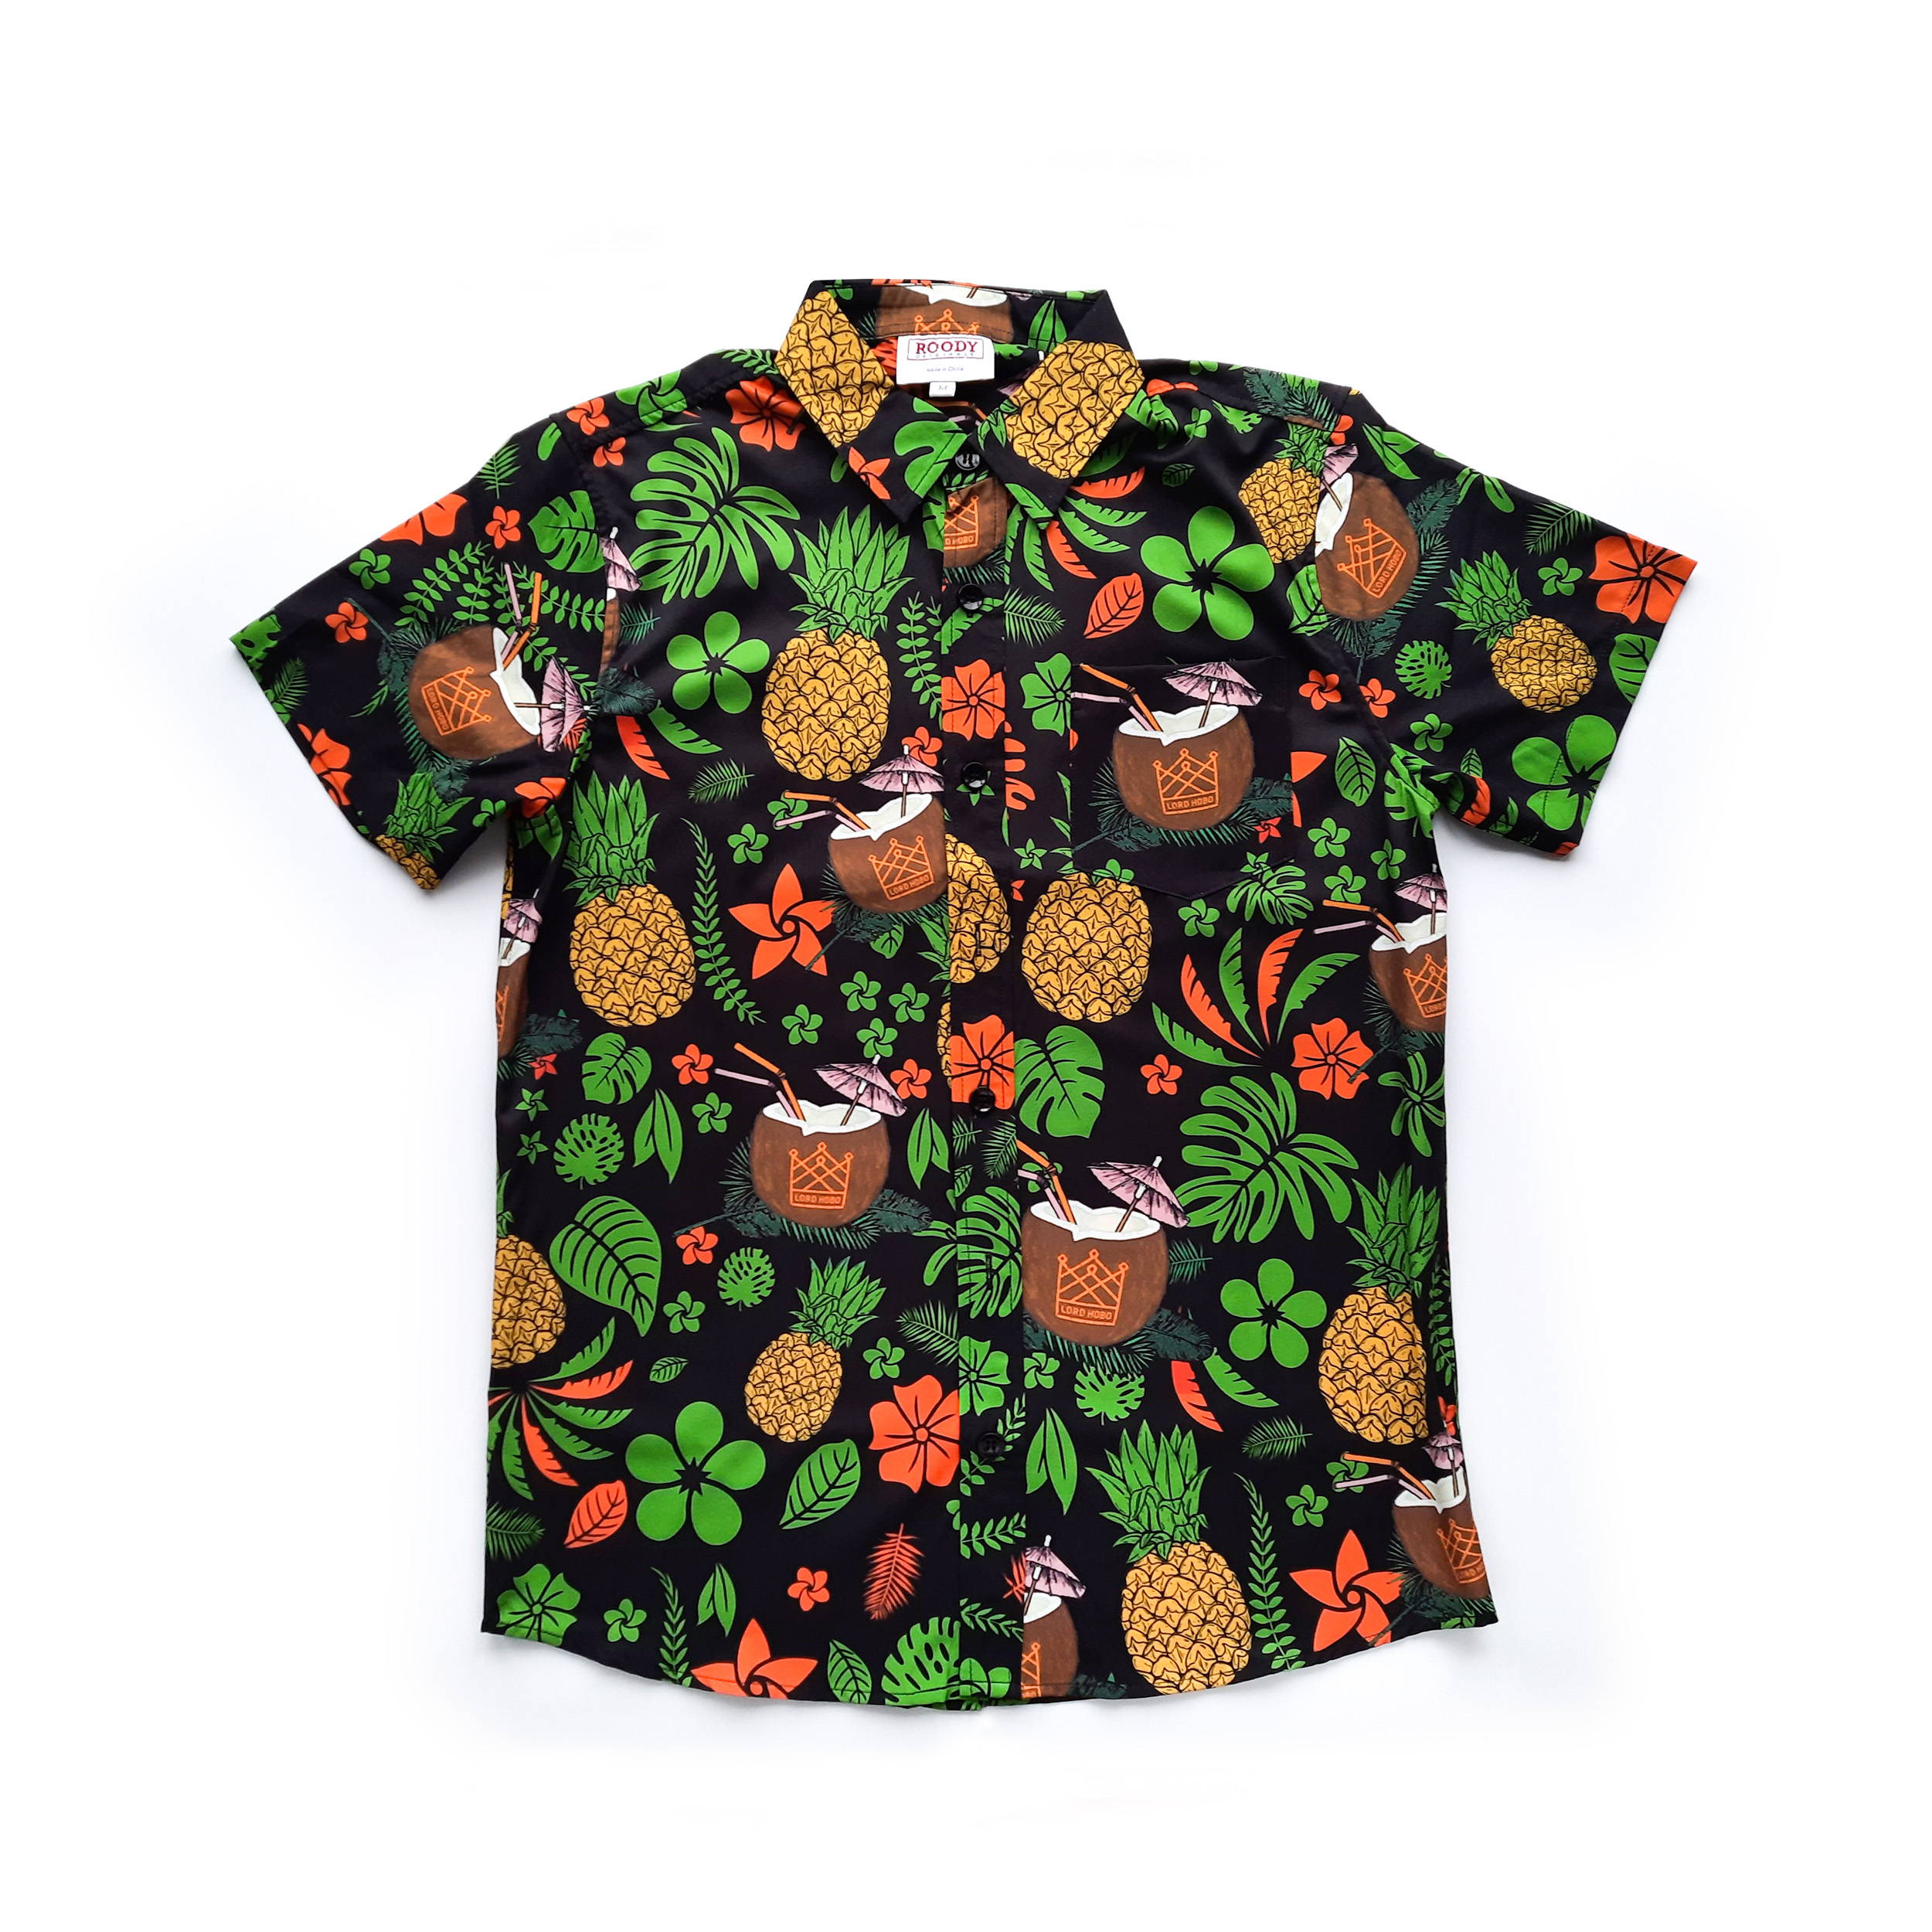 Example of a custom Hawaiian Shirt